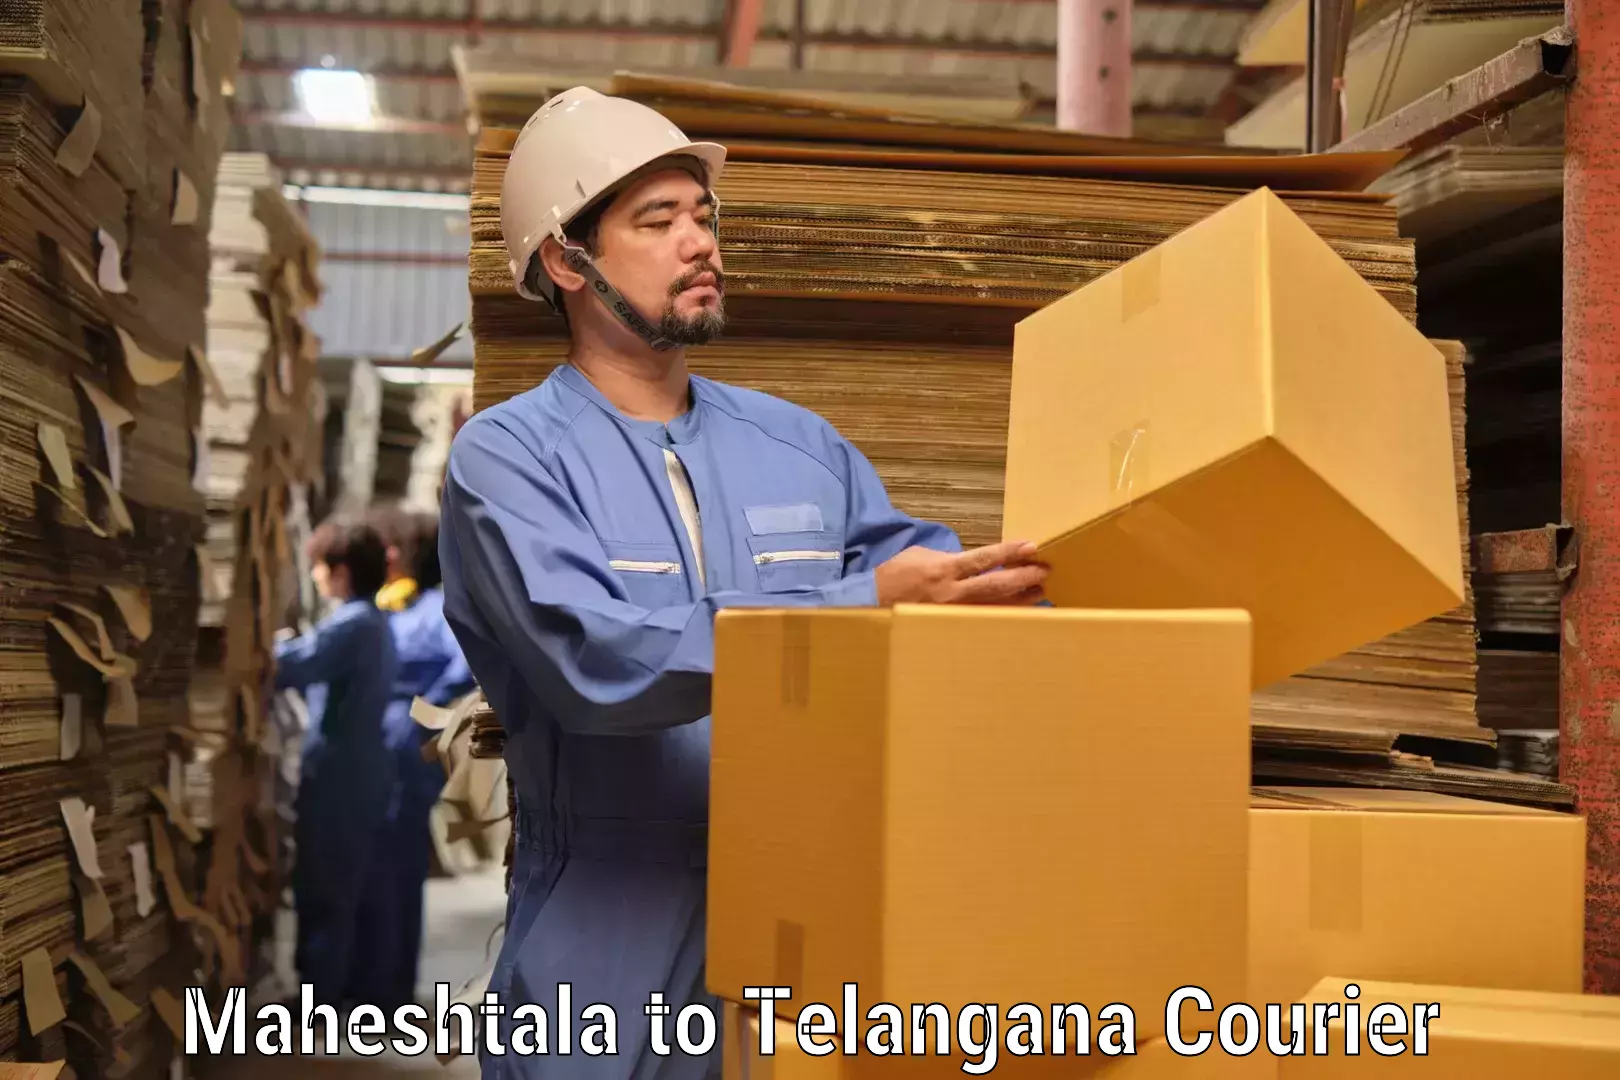 Cash on delivery service Maheshtala to Yellandu